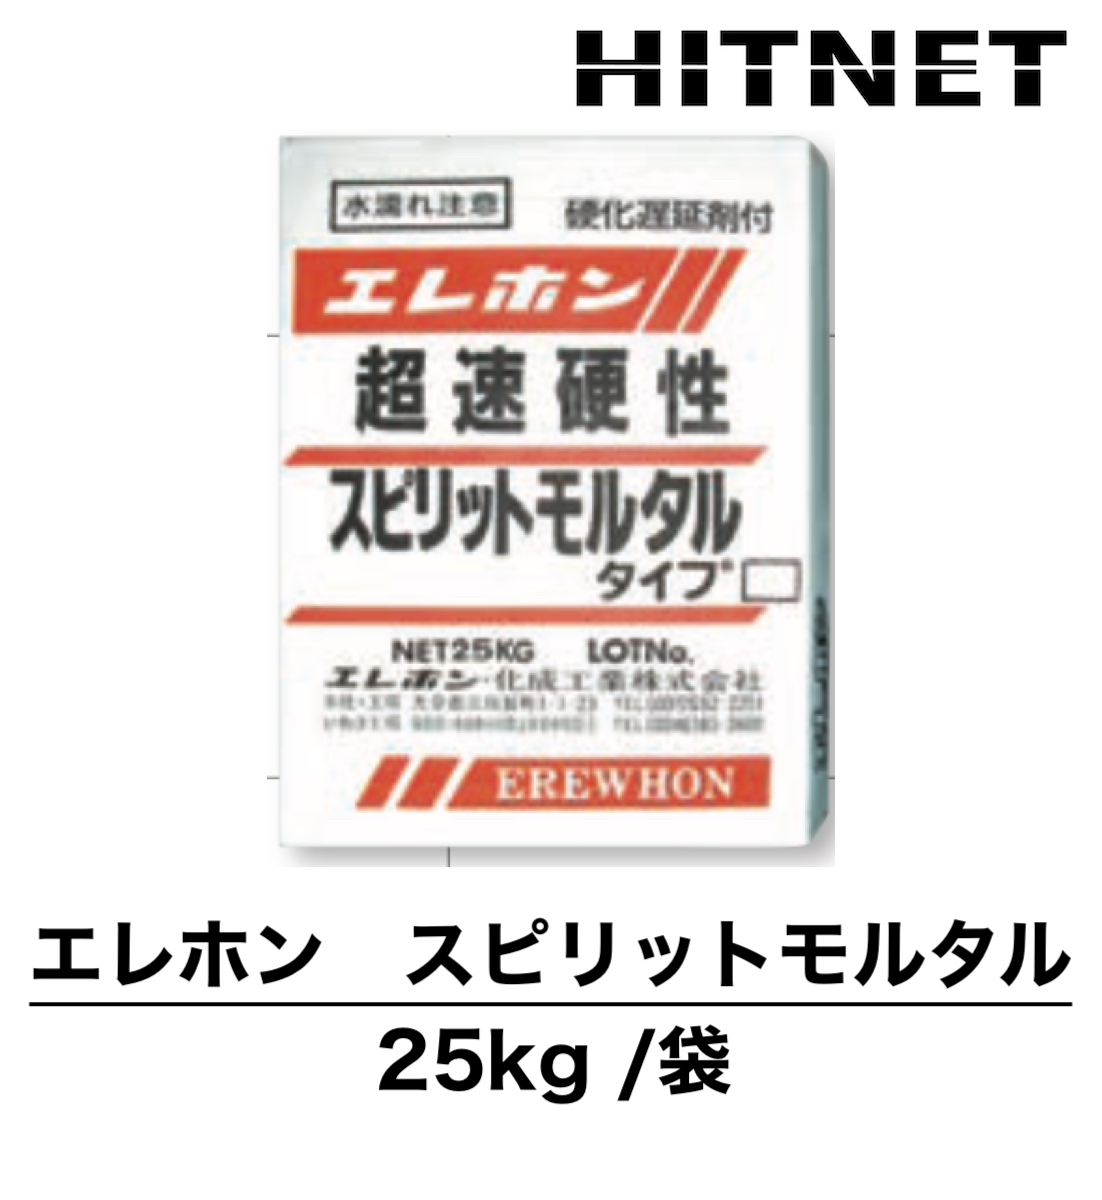 エレホン スピリットモルタル 25kg 超速硬性セメント : hitnet-1182